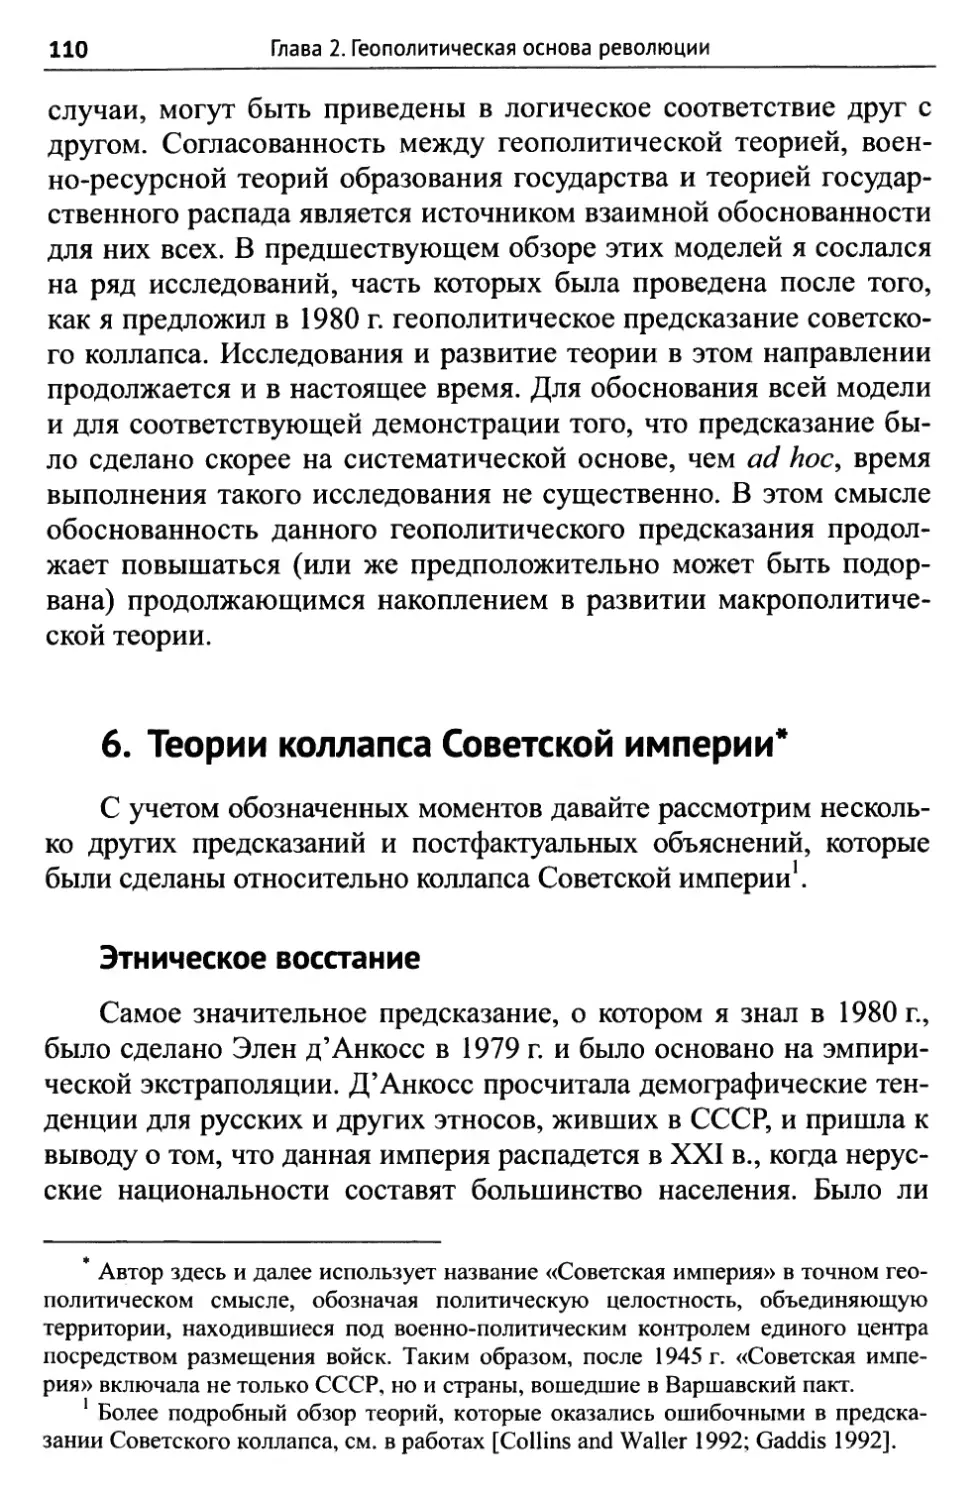 6. Теории коллапса Советской империи